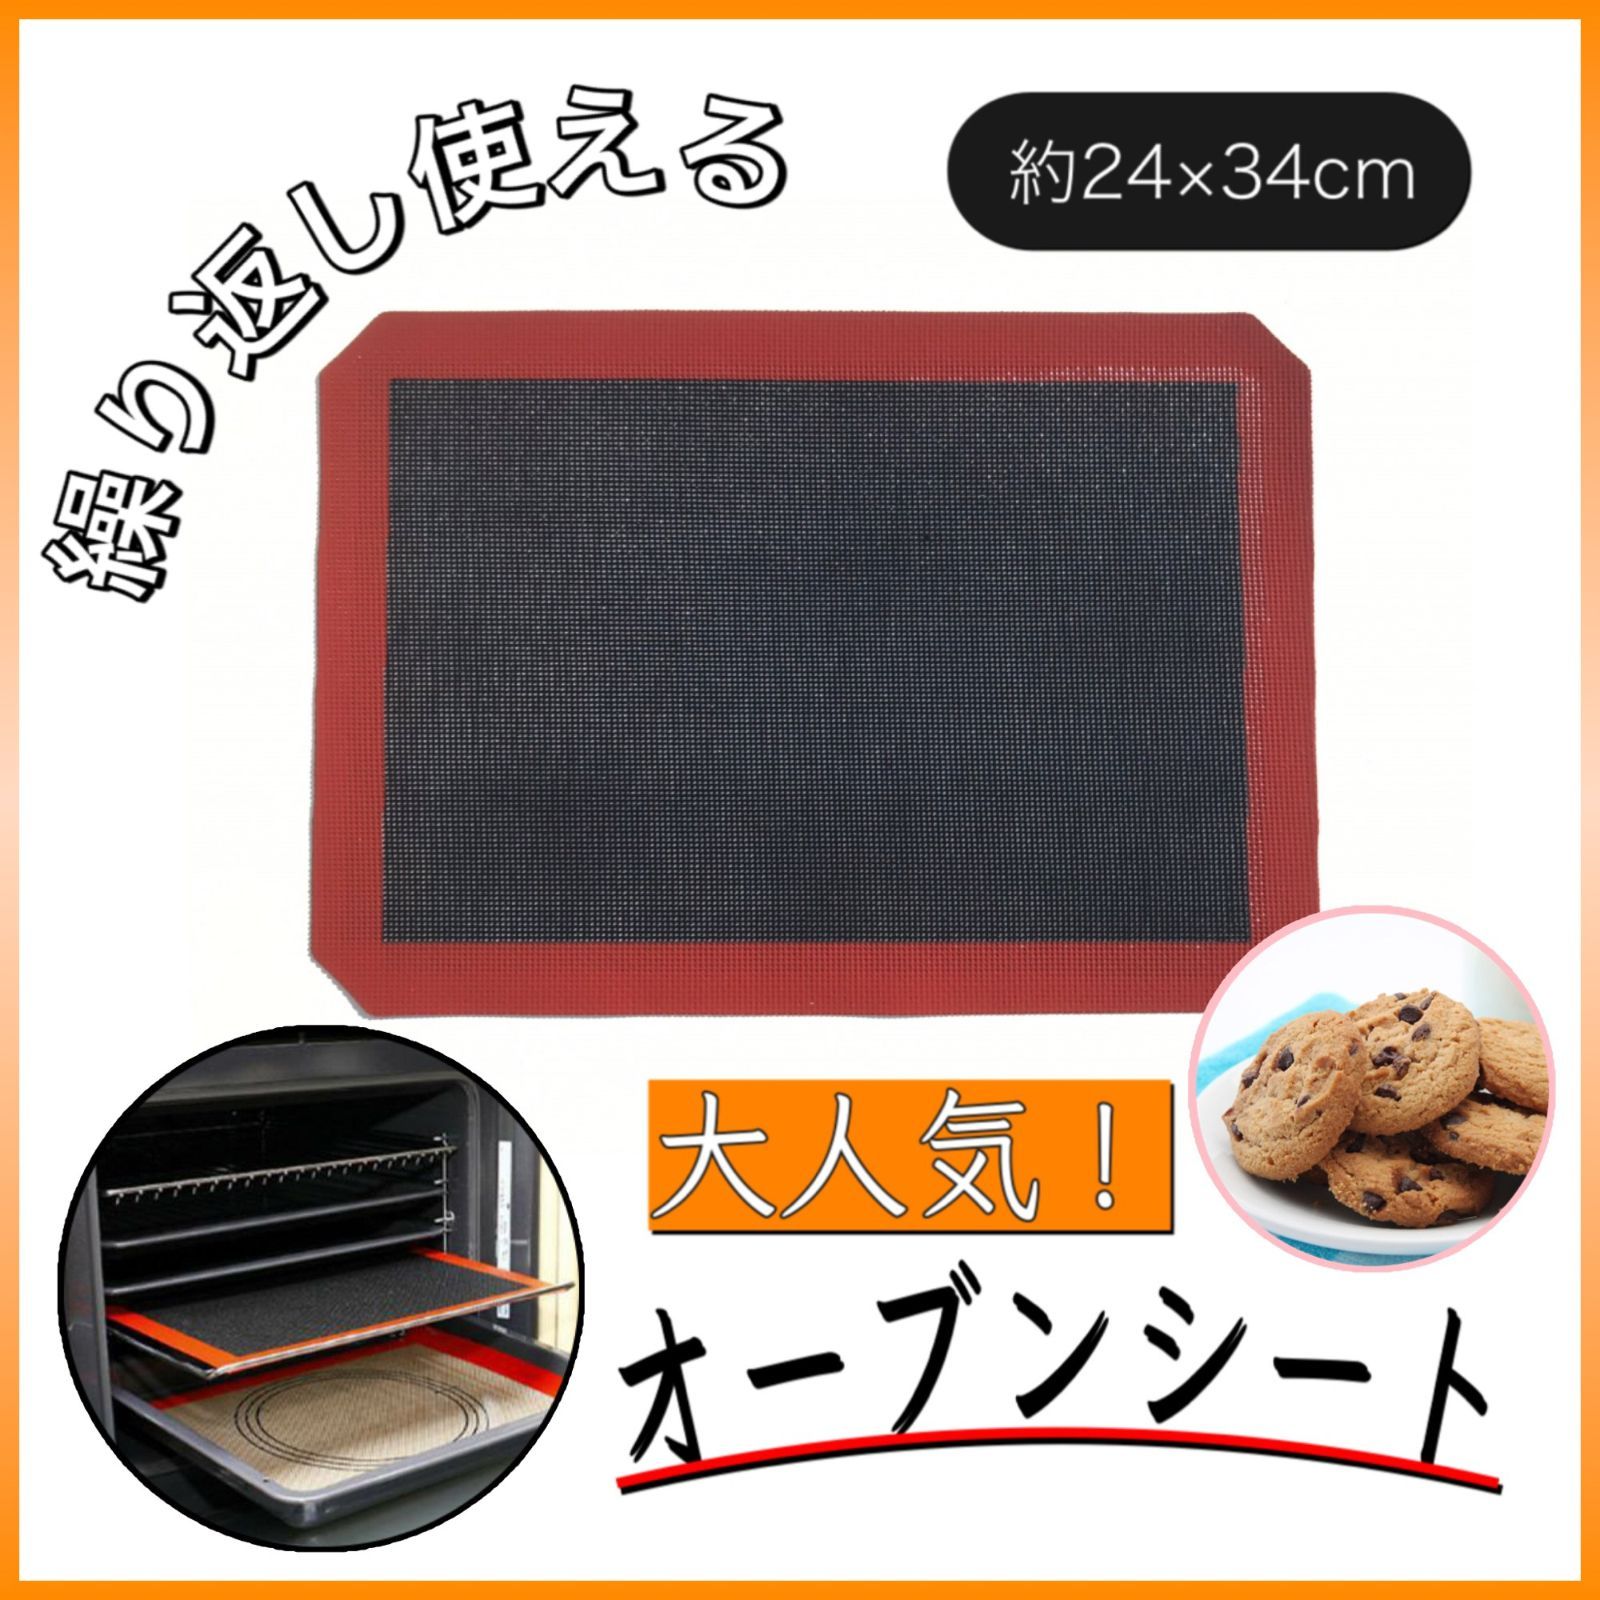 特価品コーナー☆ クッキングシート24×34cm シルパン お菓子 パン クッキー オーブン